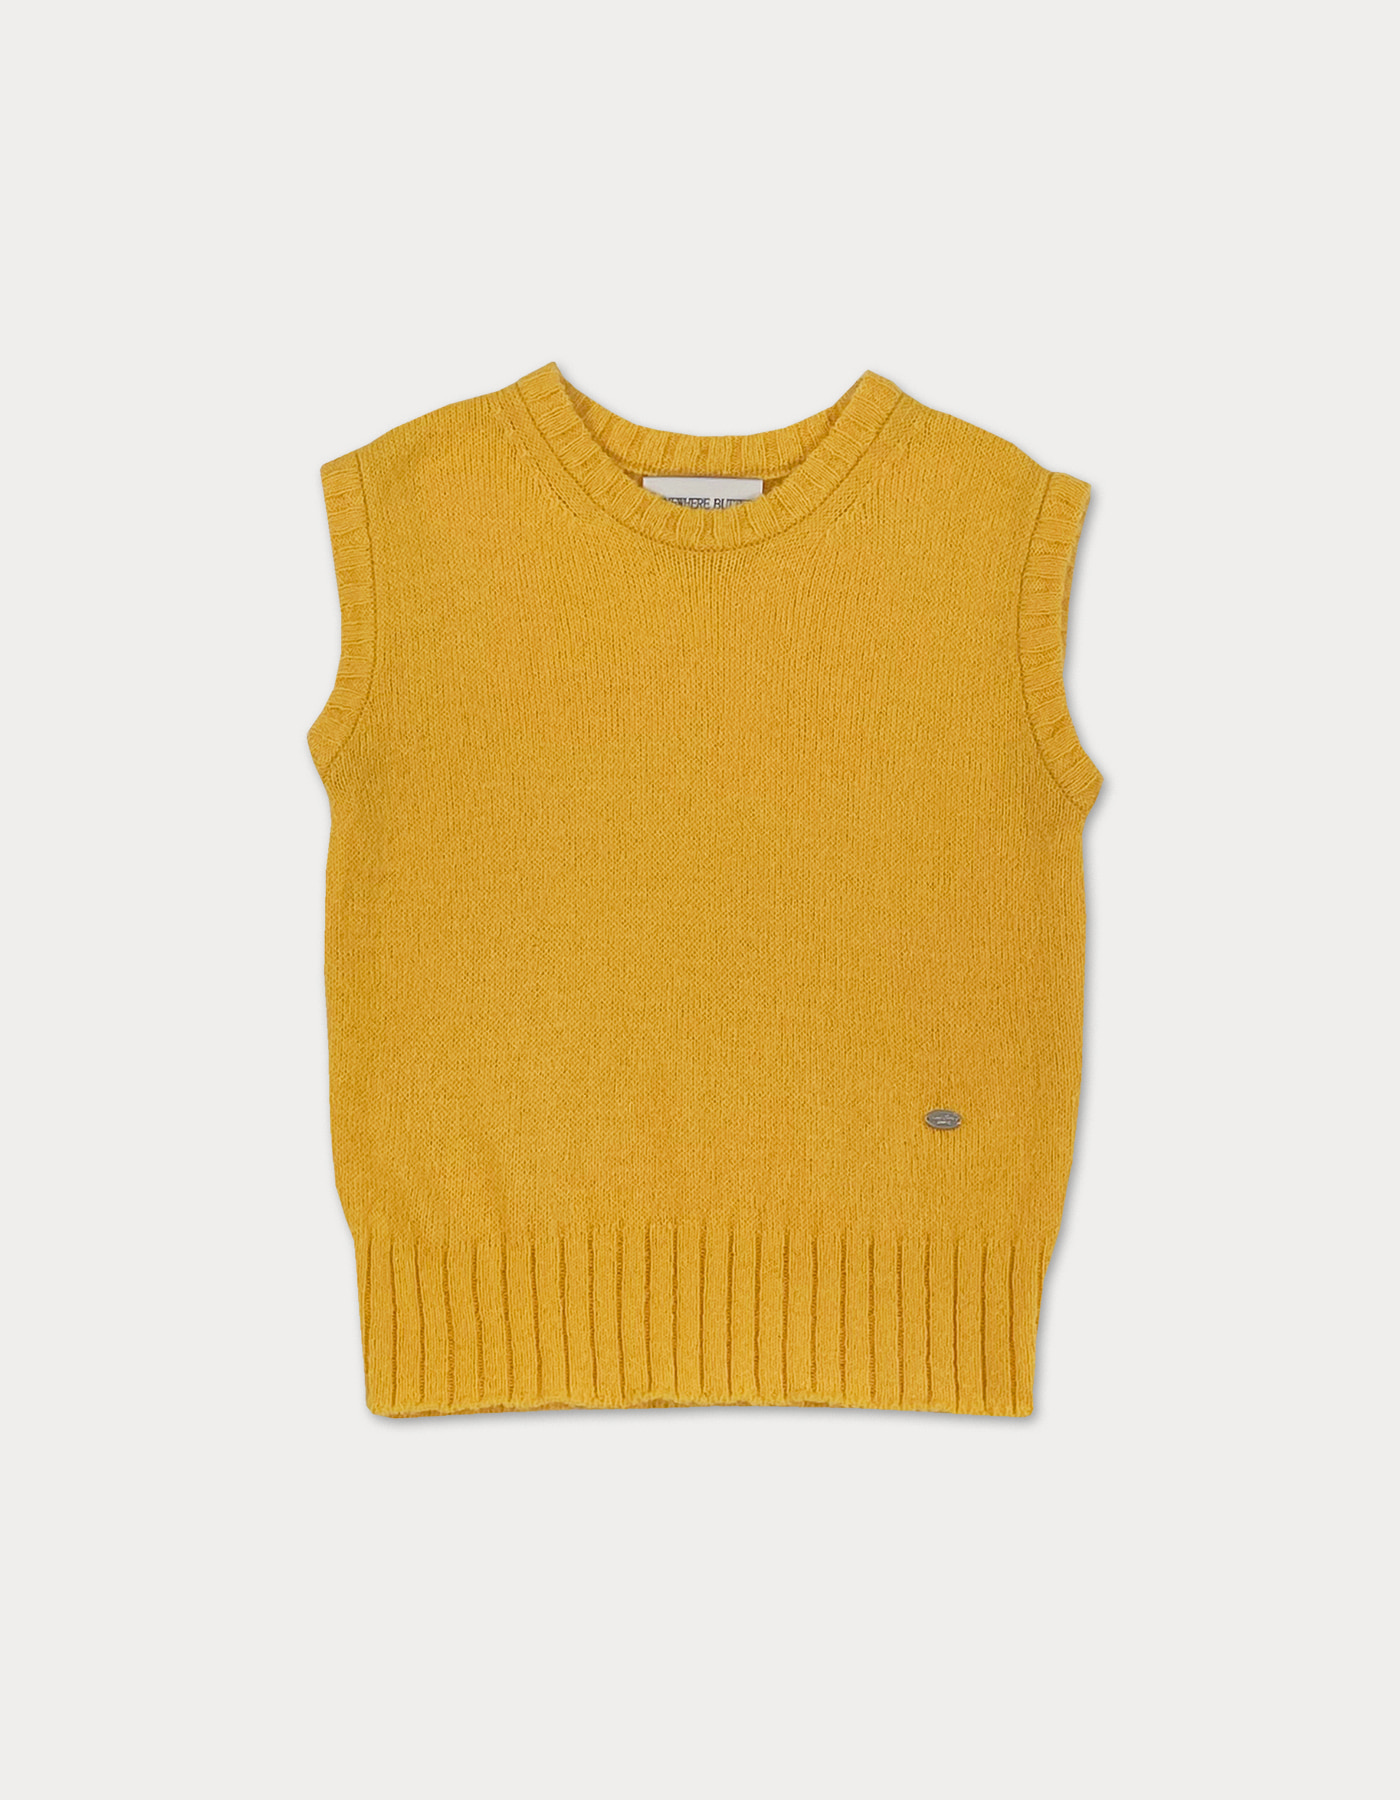 70s vintage vest - yellow